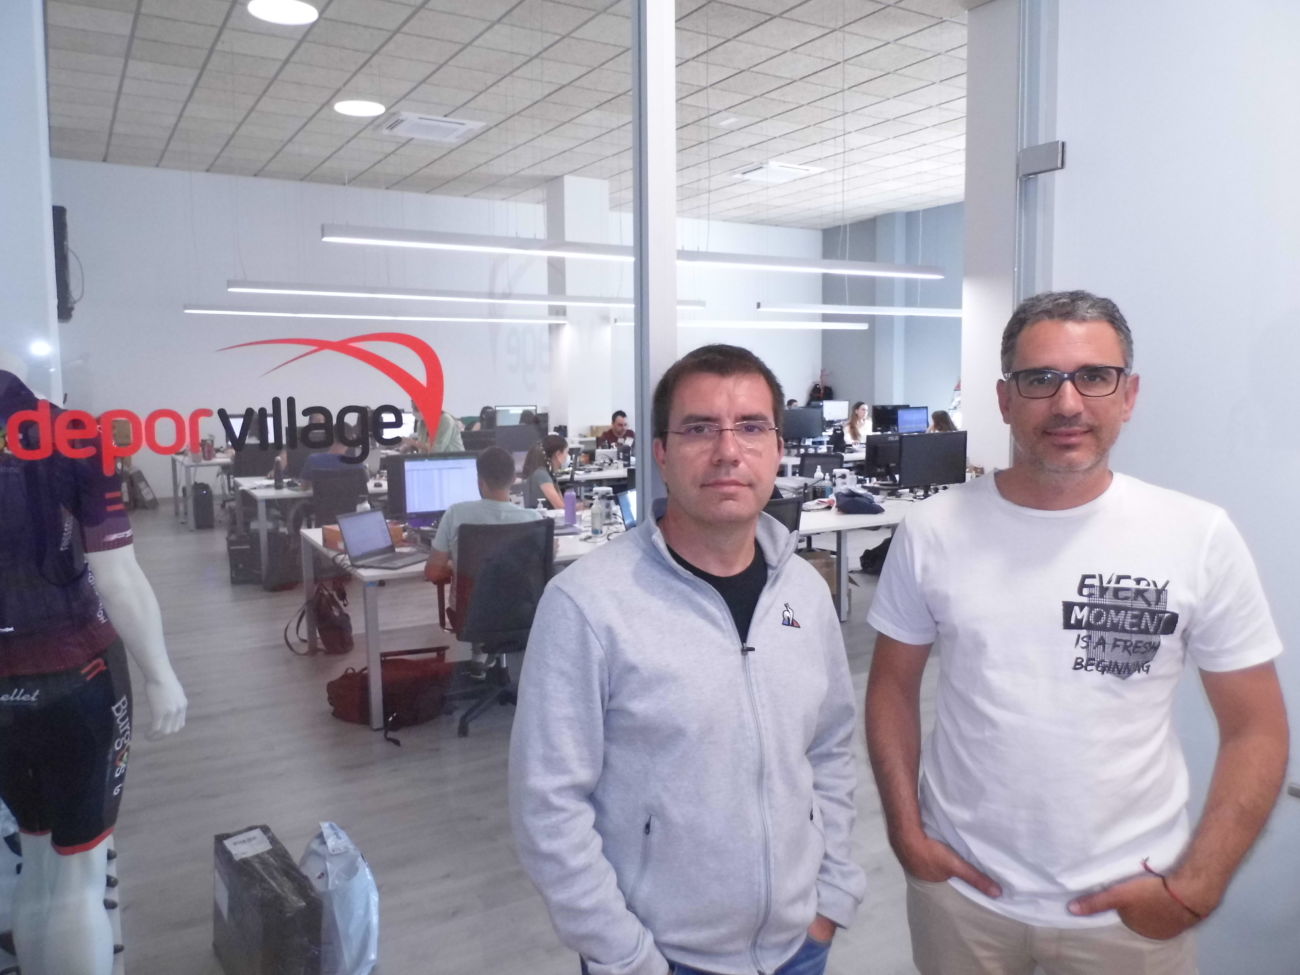 Xavier Pladellorens y Angel Corcuera son socios fundadores de Deporvillage